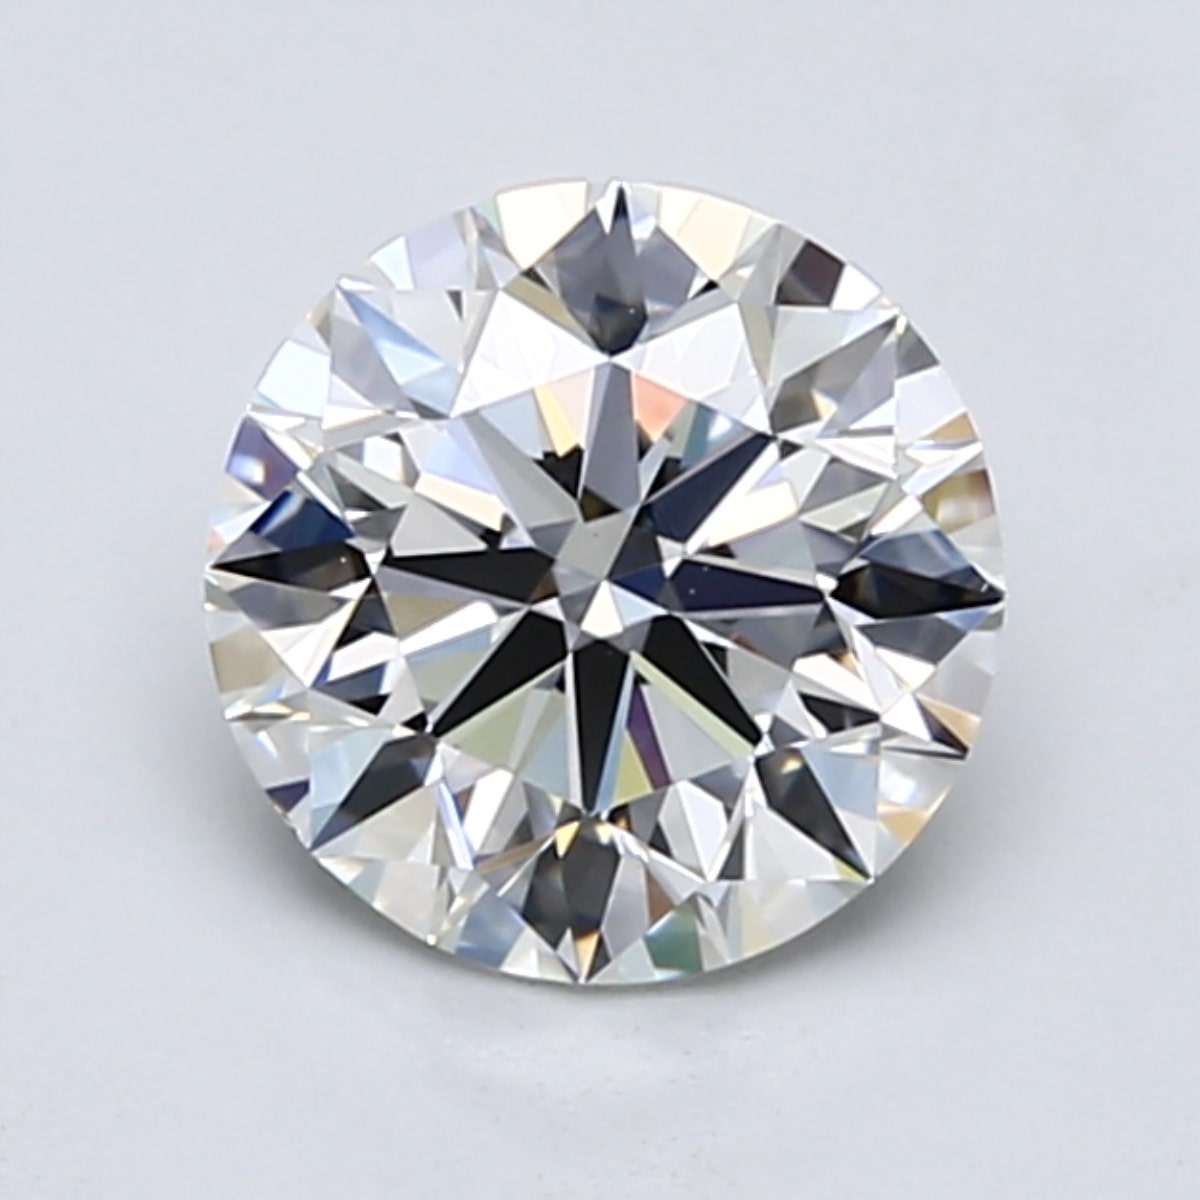 1.5 carat F color diamond